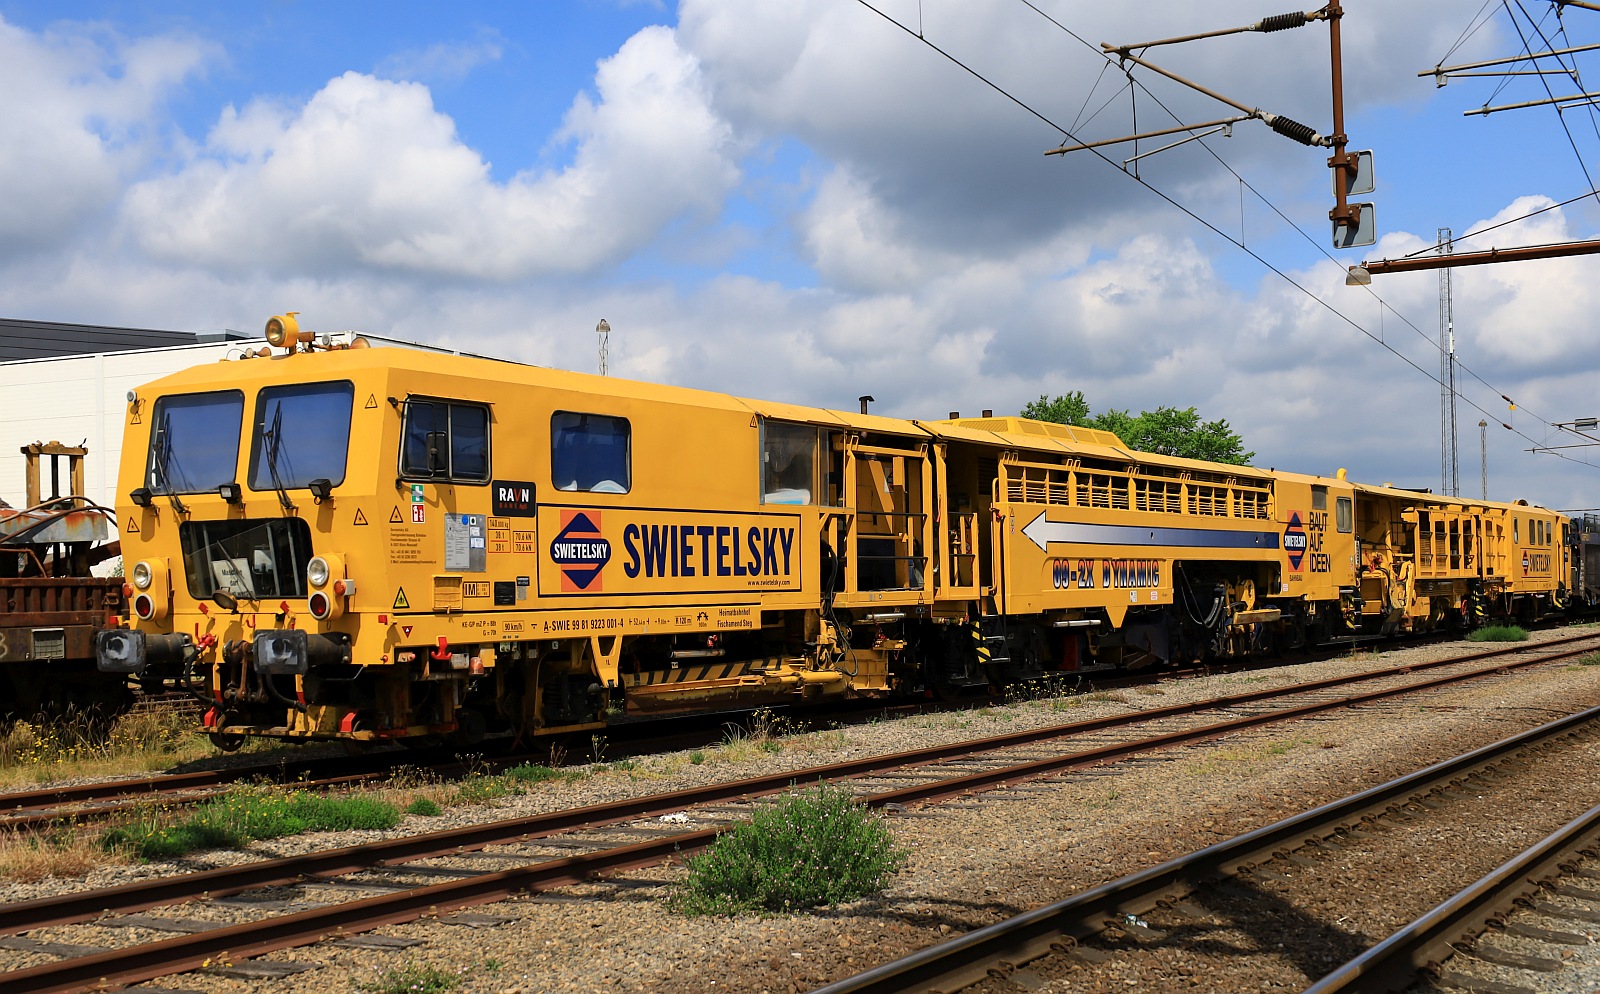 Swietelsky P&T 09-2X Dynamic registriert unter A-SWIE 99 81 9223 001-4 (Pl & Th Baunummer 2567 Baujahr 1992) steht immernoch im dänischen Padborg abgestellt. 25.06.2023